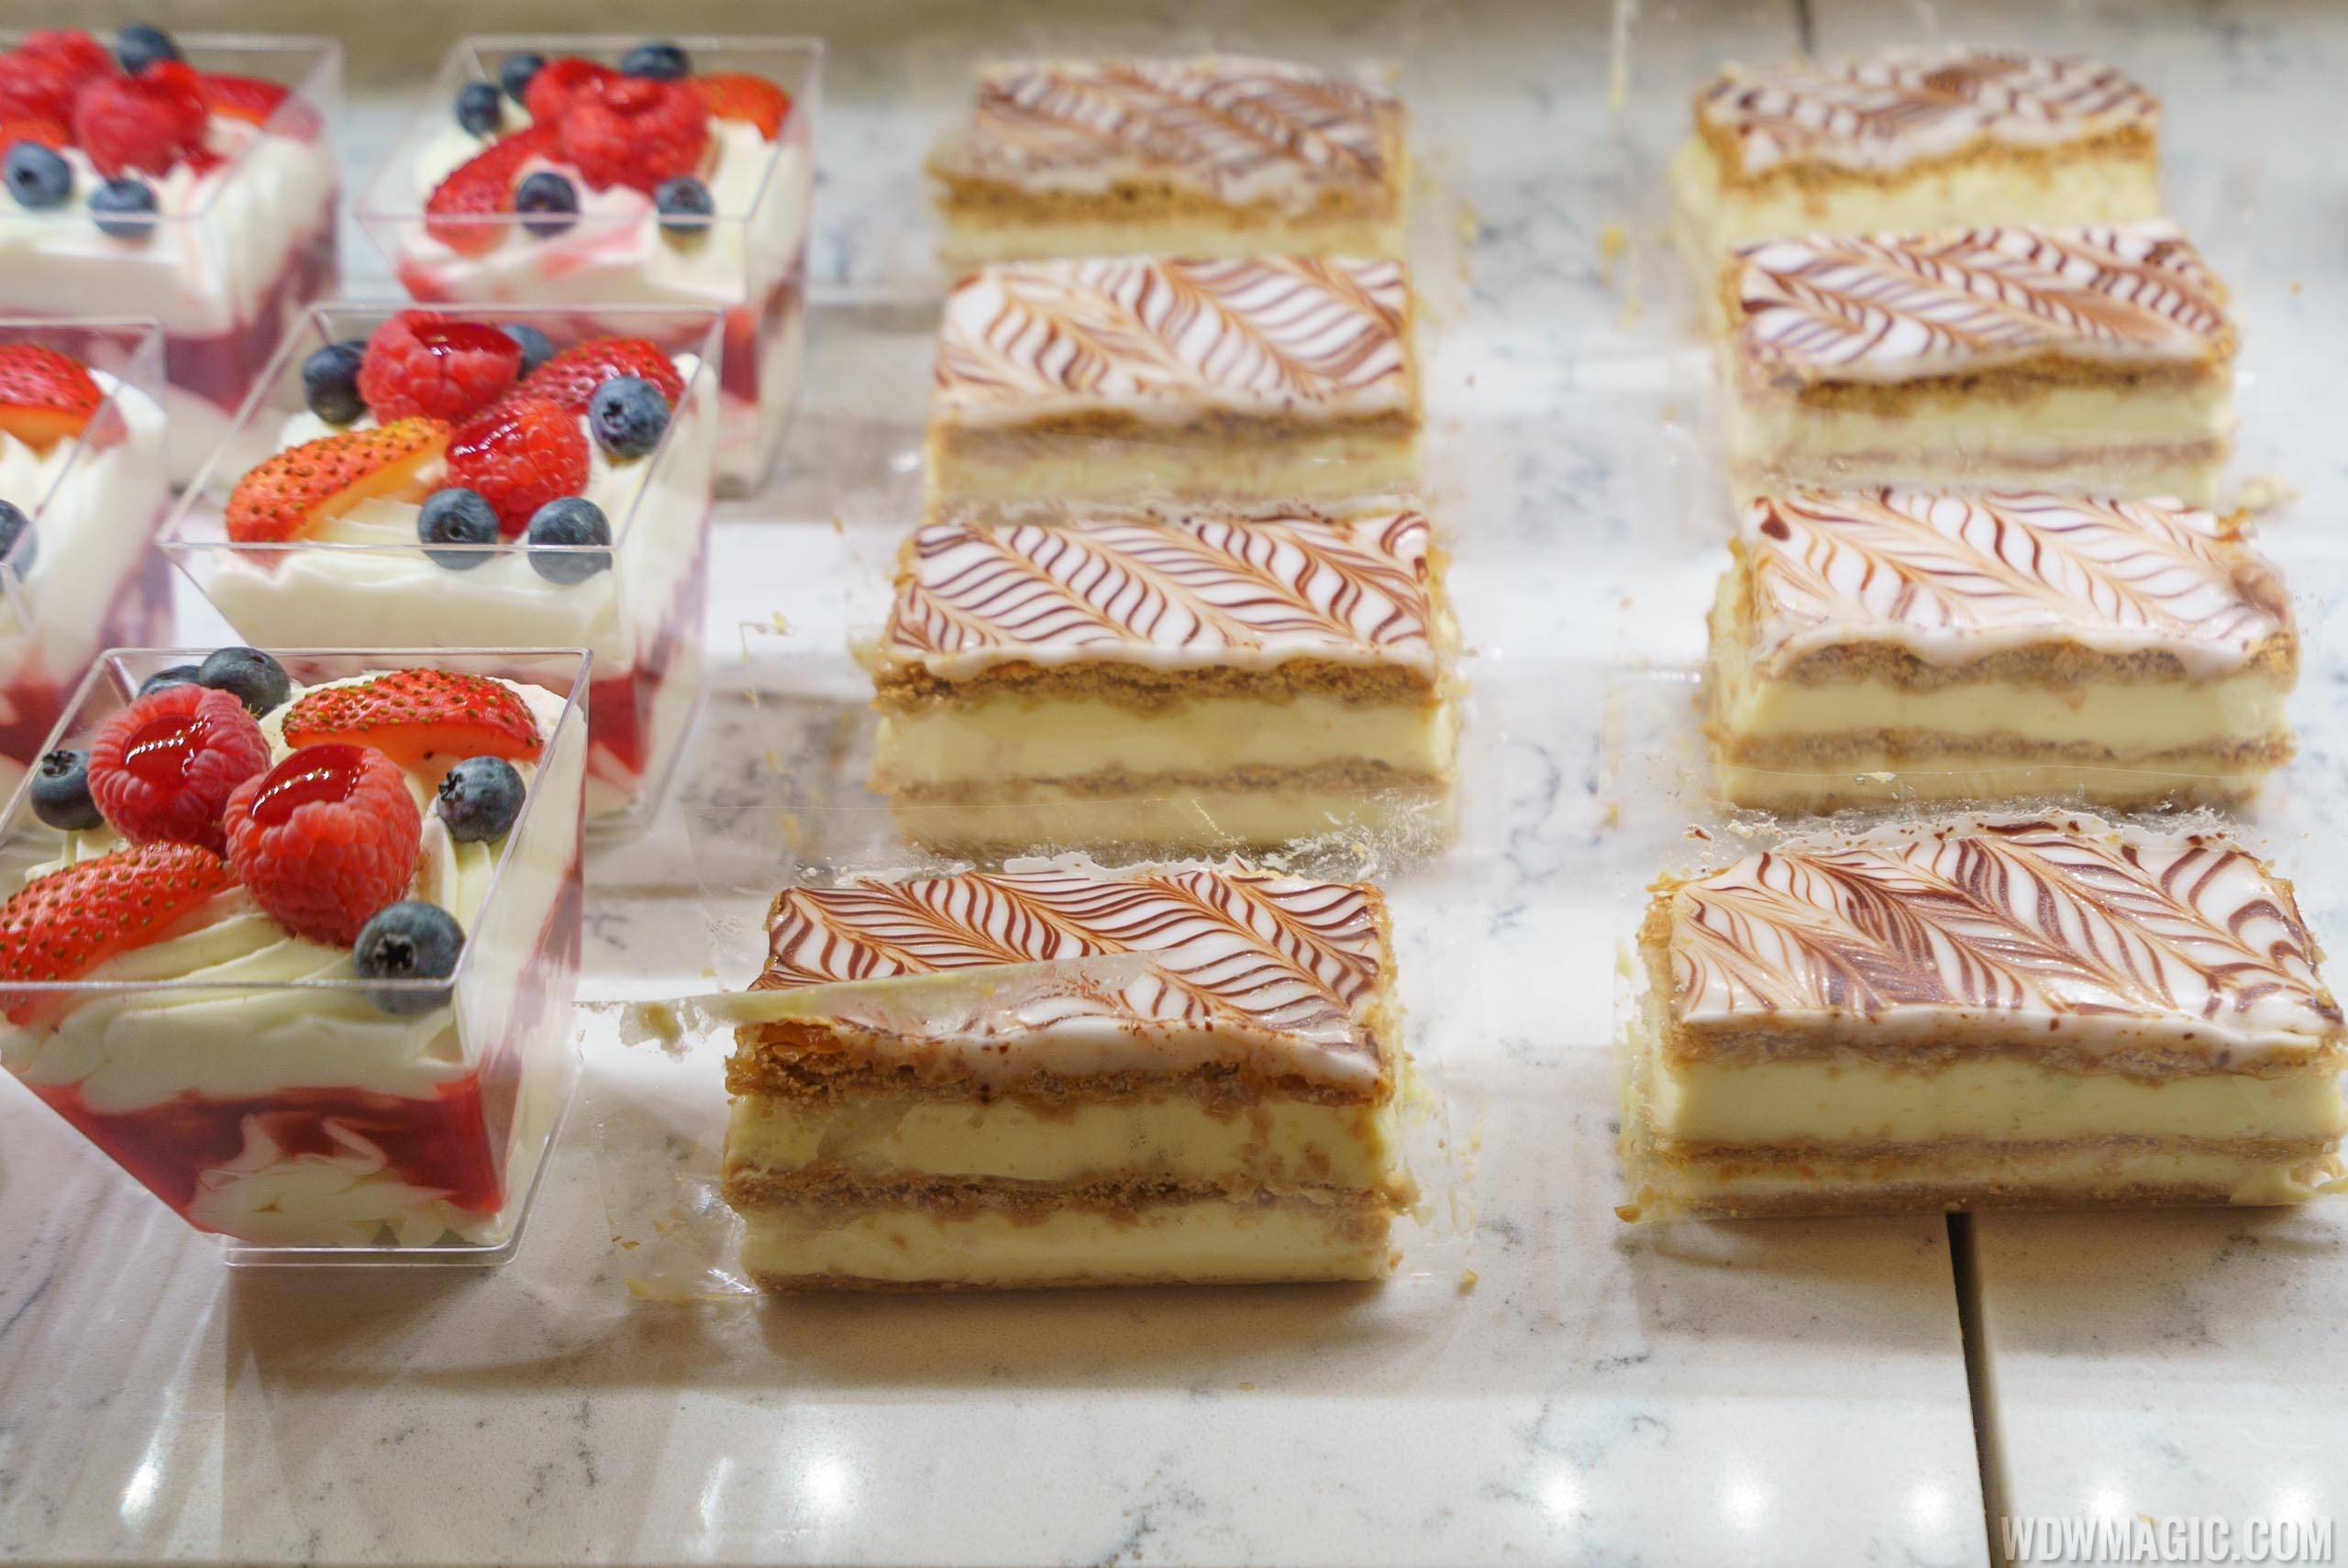 Les Halles Boulangerie pastries